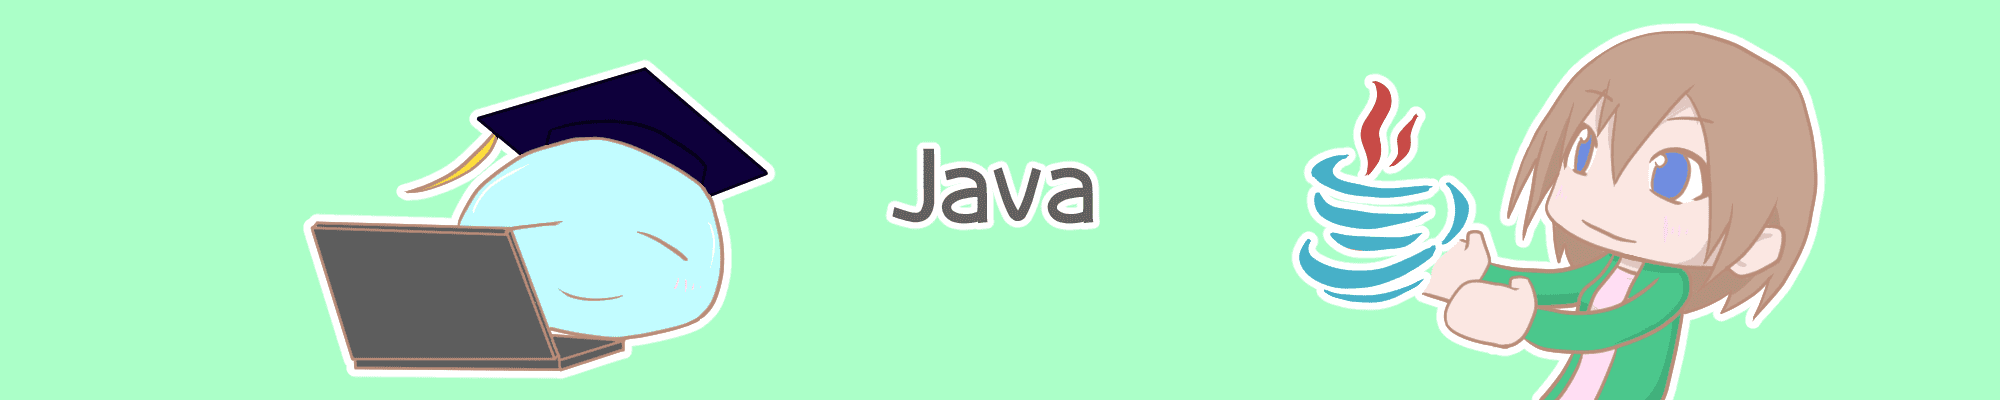 バナー_Java